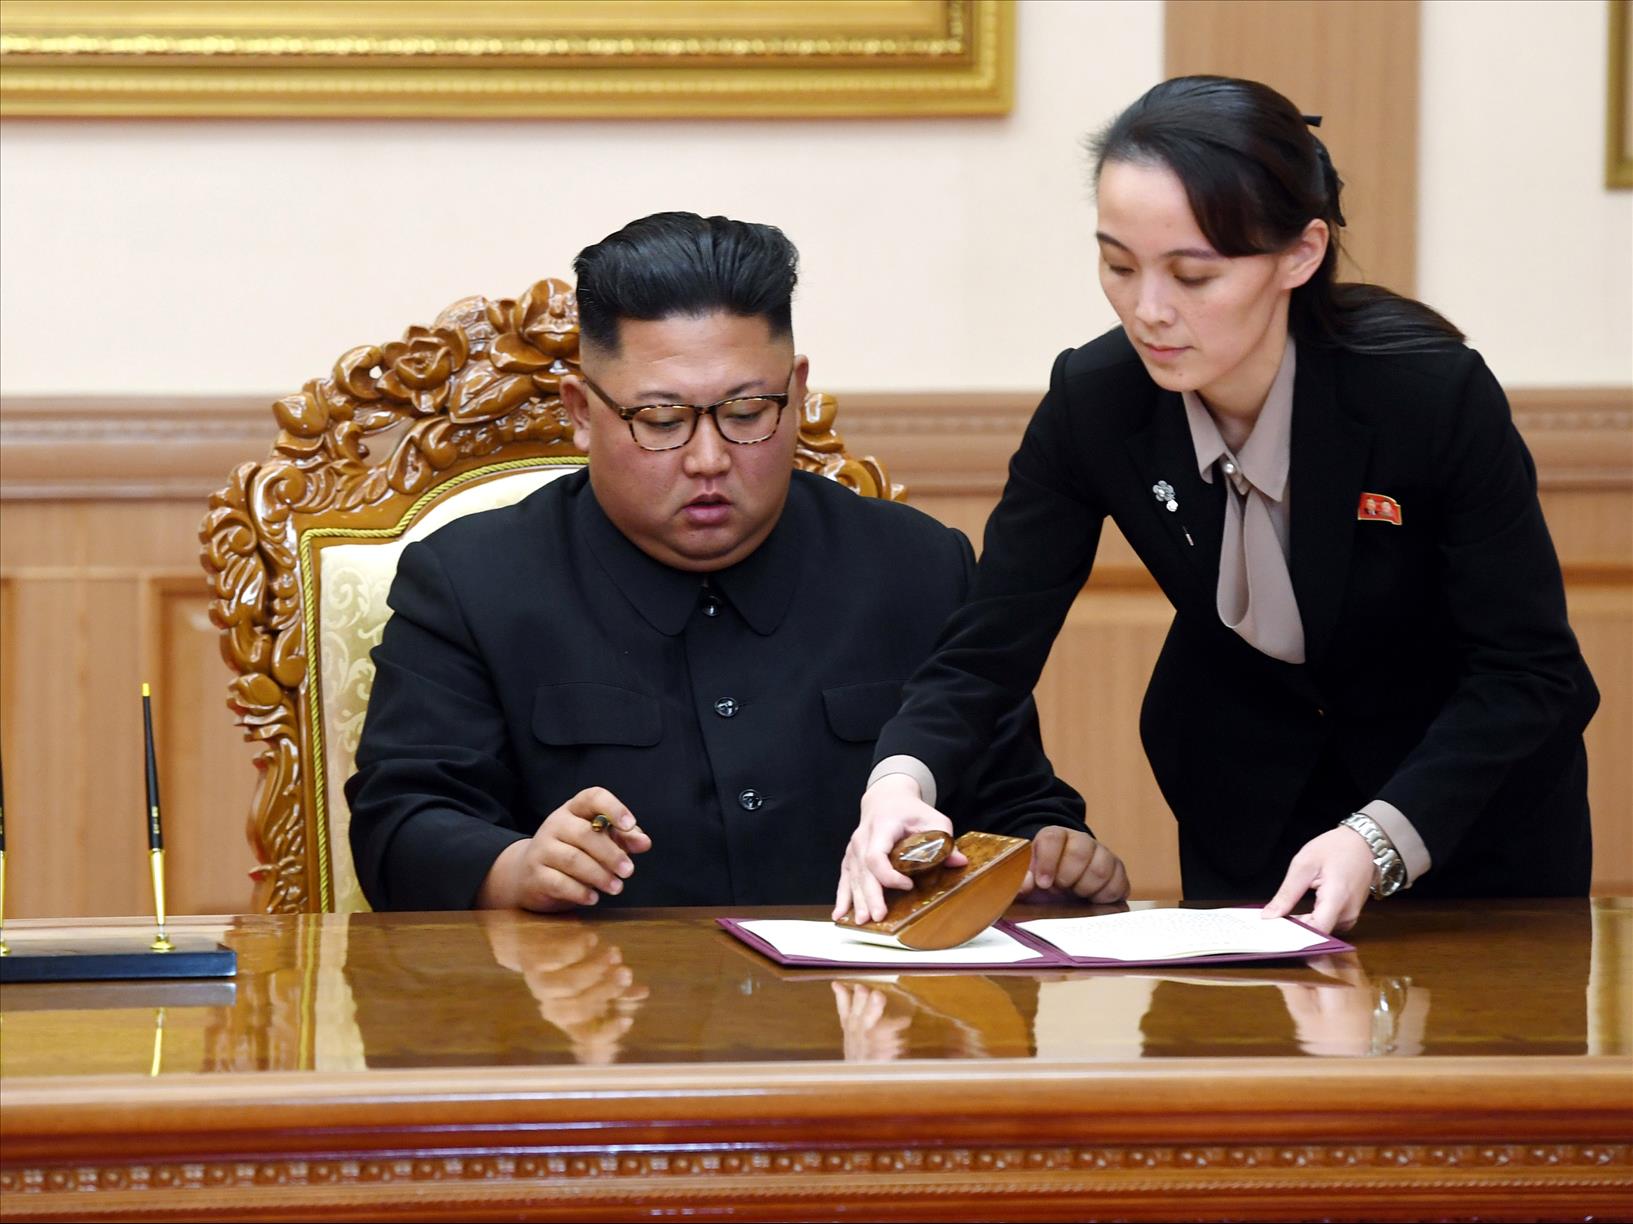 شقيقة كيم تهاجم رئيس كوريا الجنوبية بضراوة' 